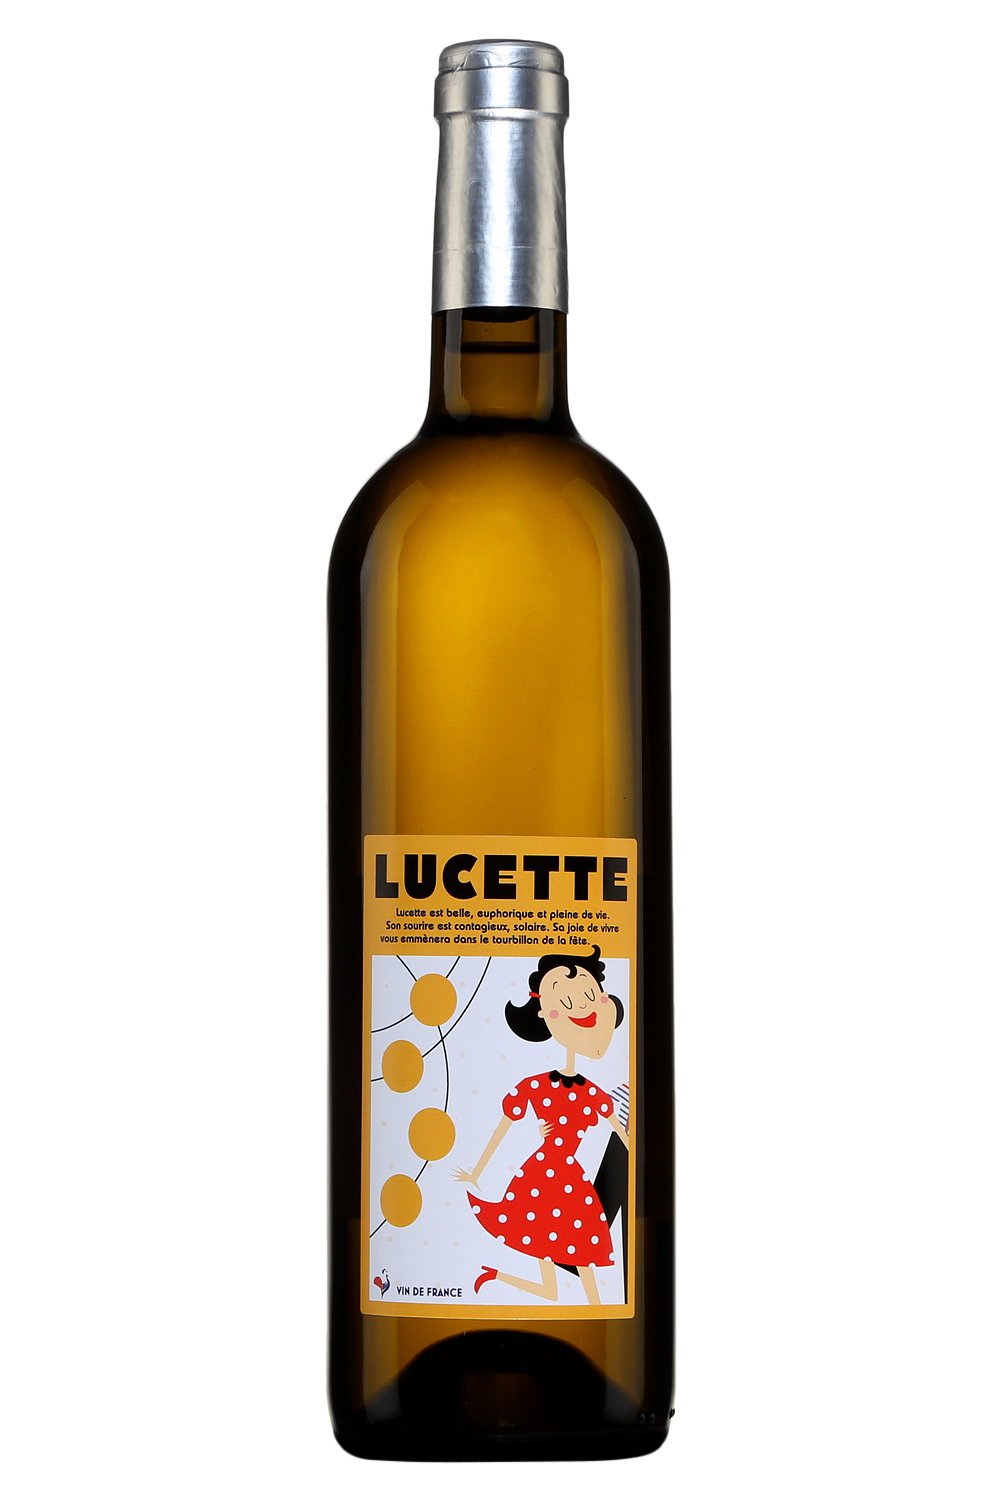 Turner Pageot "Lucette" Vin de France 2019 750ml